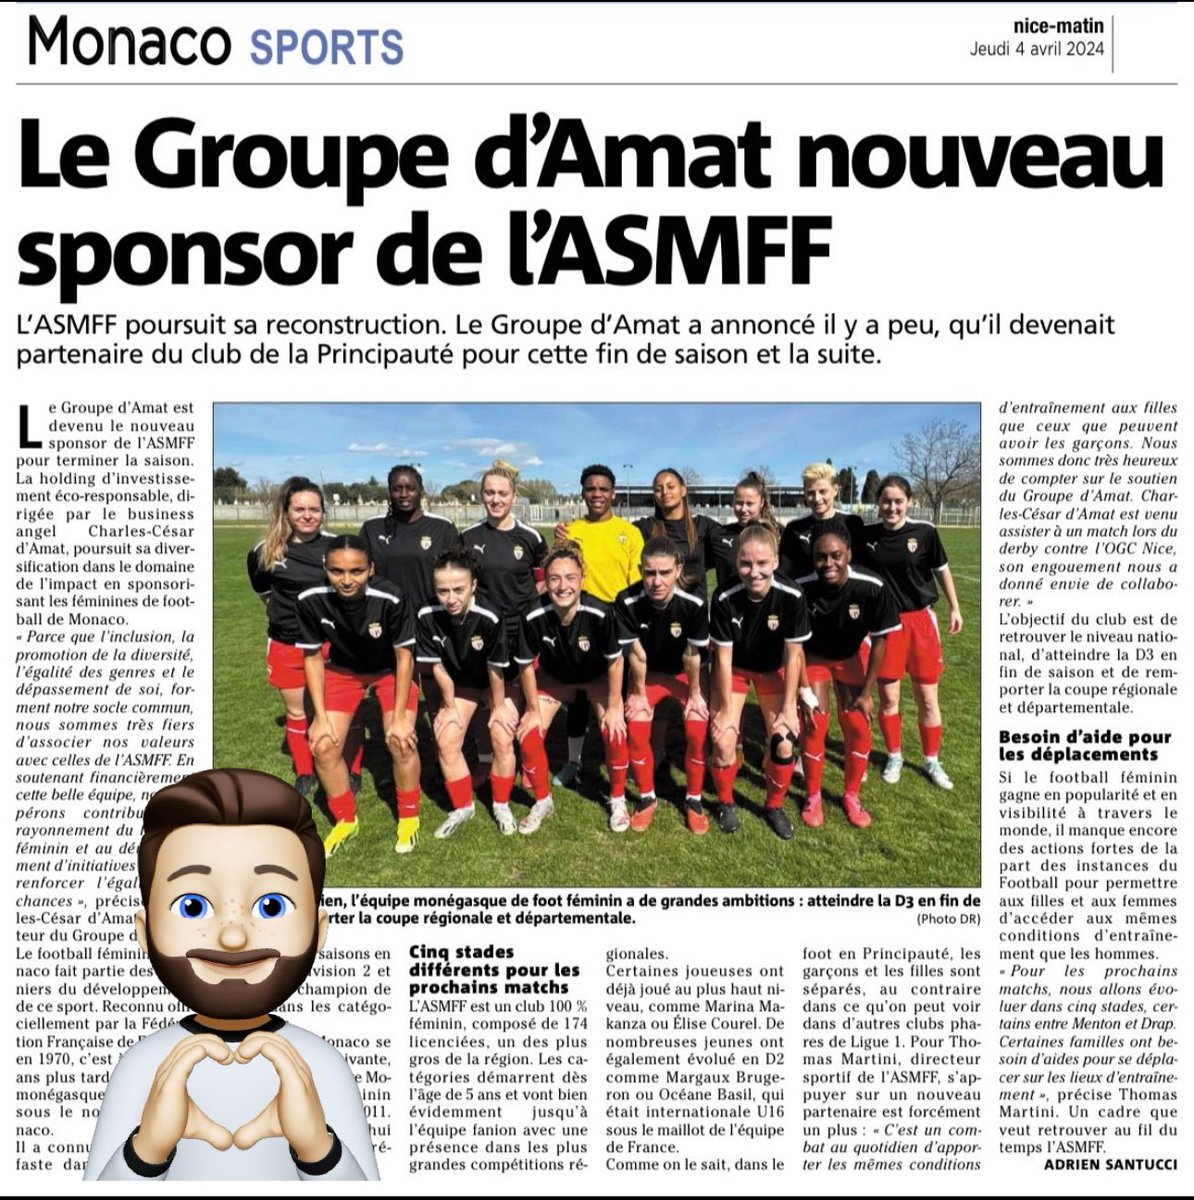 Merci à @Nice_Matin pour cet article sur notre partenariat avec l’AS Monaco Football Féminin dont nous partageons les valeurs à impact que sont: l’inclusion, l’égalité, et dépassement de soi #groupedamat #asmonaco #asmff #monaco #football #footfeminin